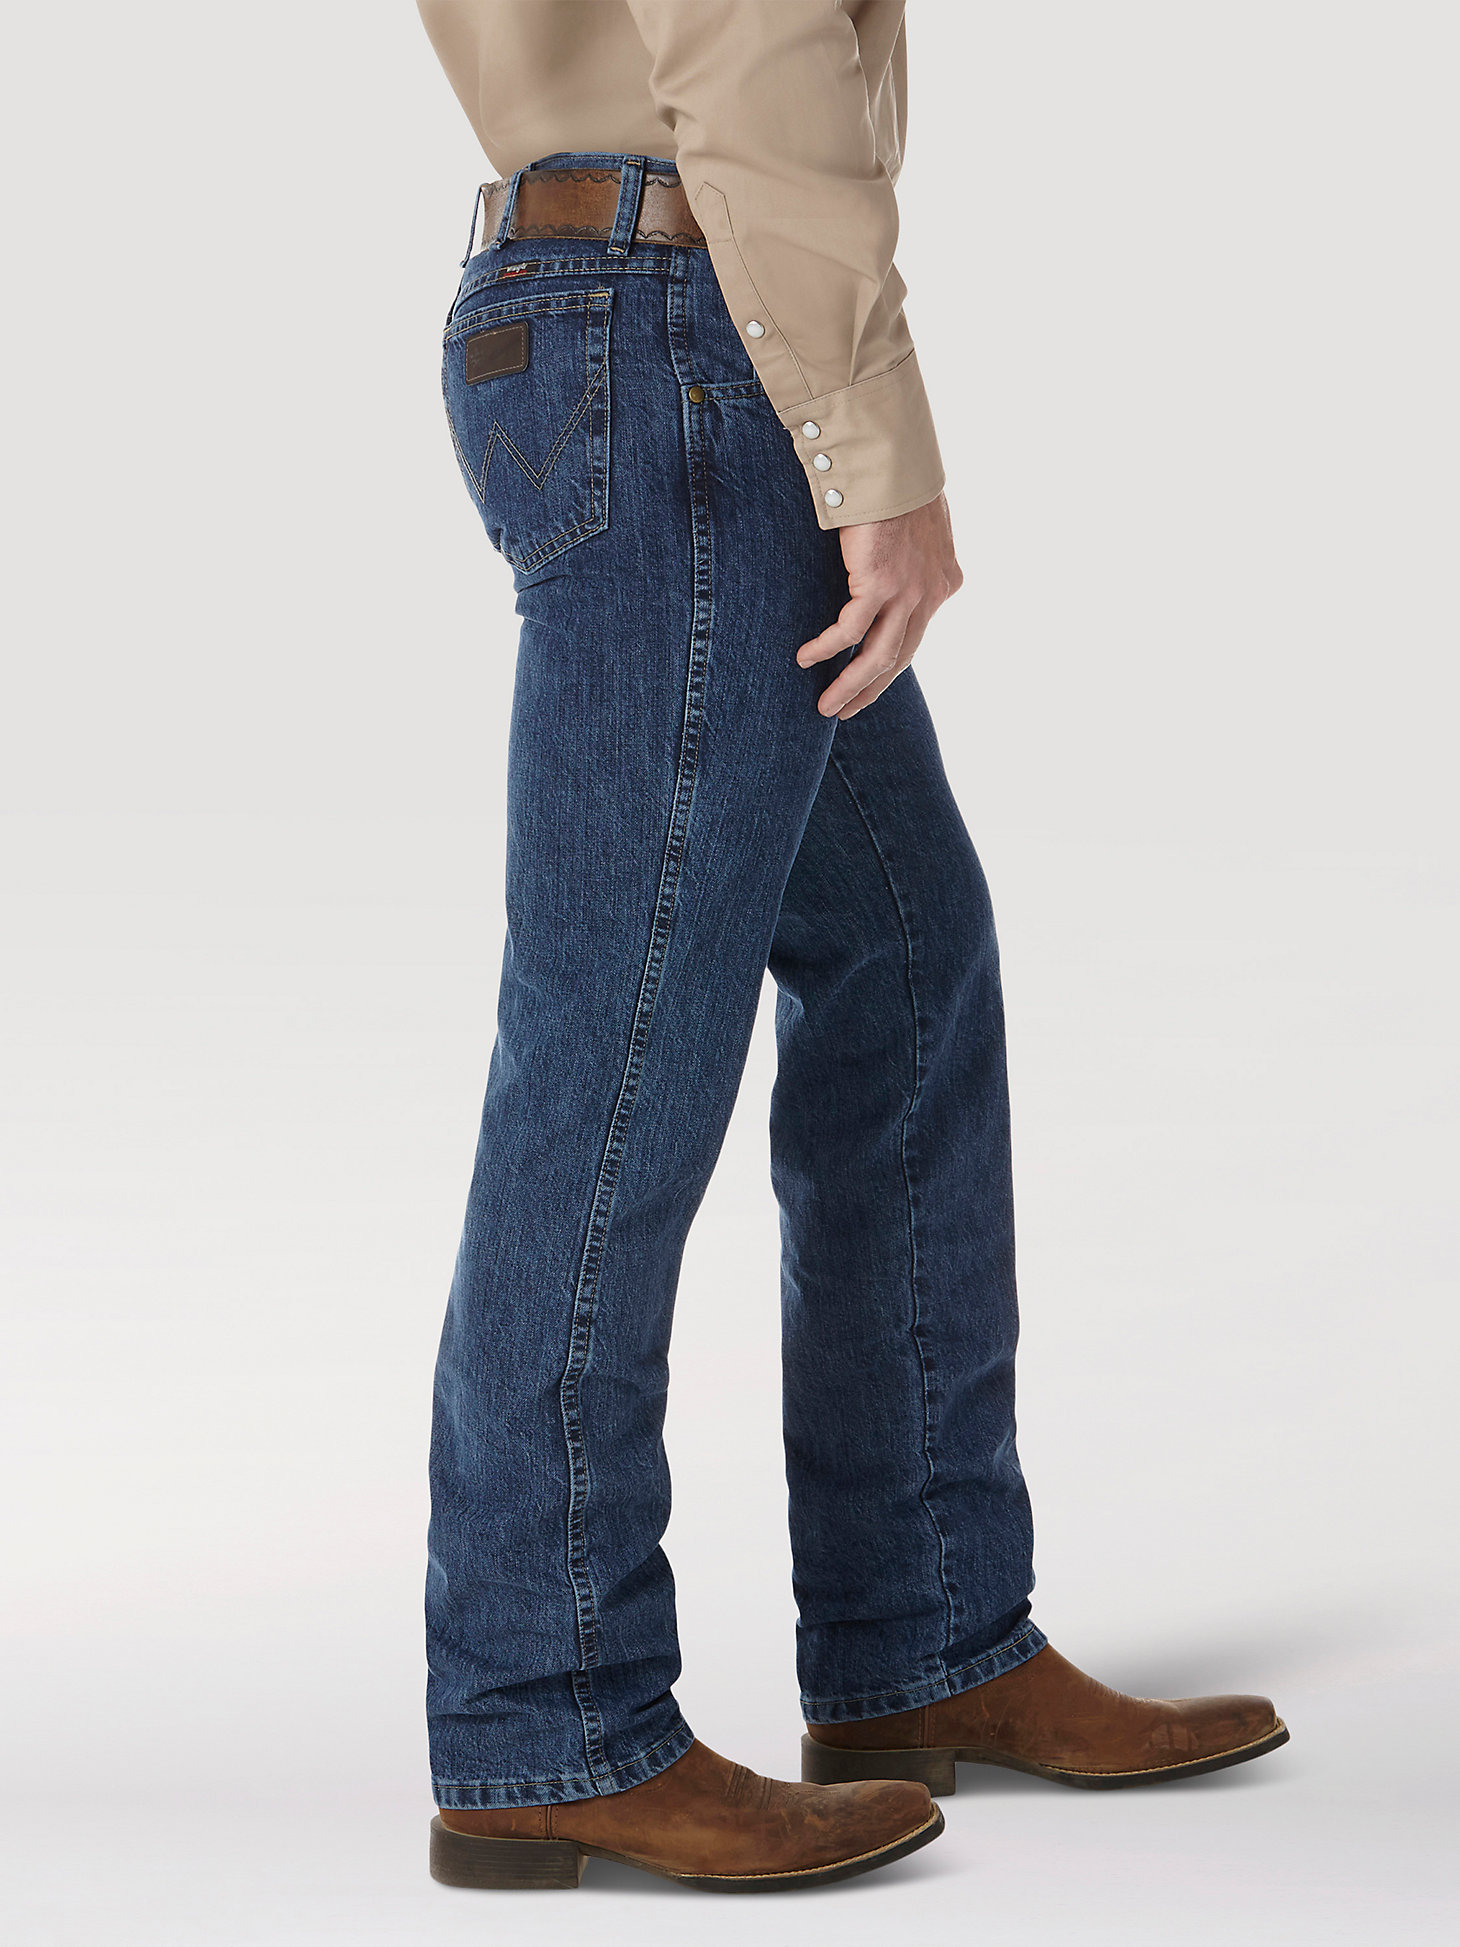 Men's Wrangler® PBR® Slim Fit Jean in Authentic Stone alternative view 1